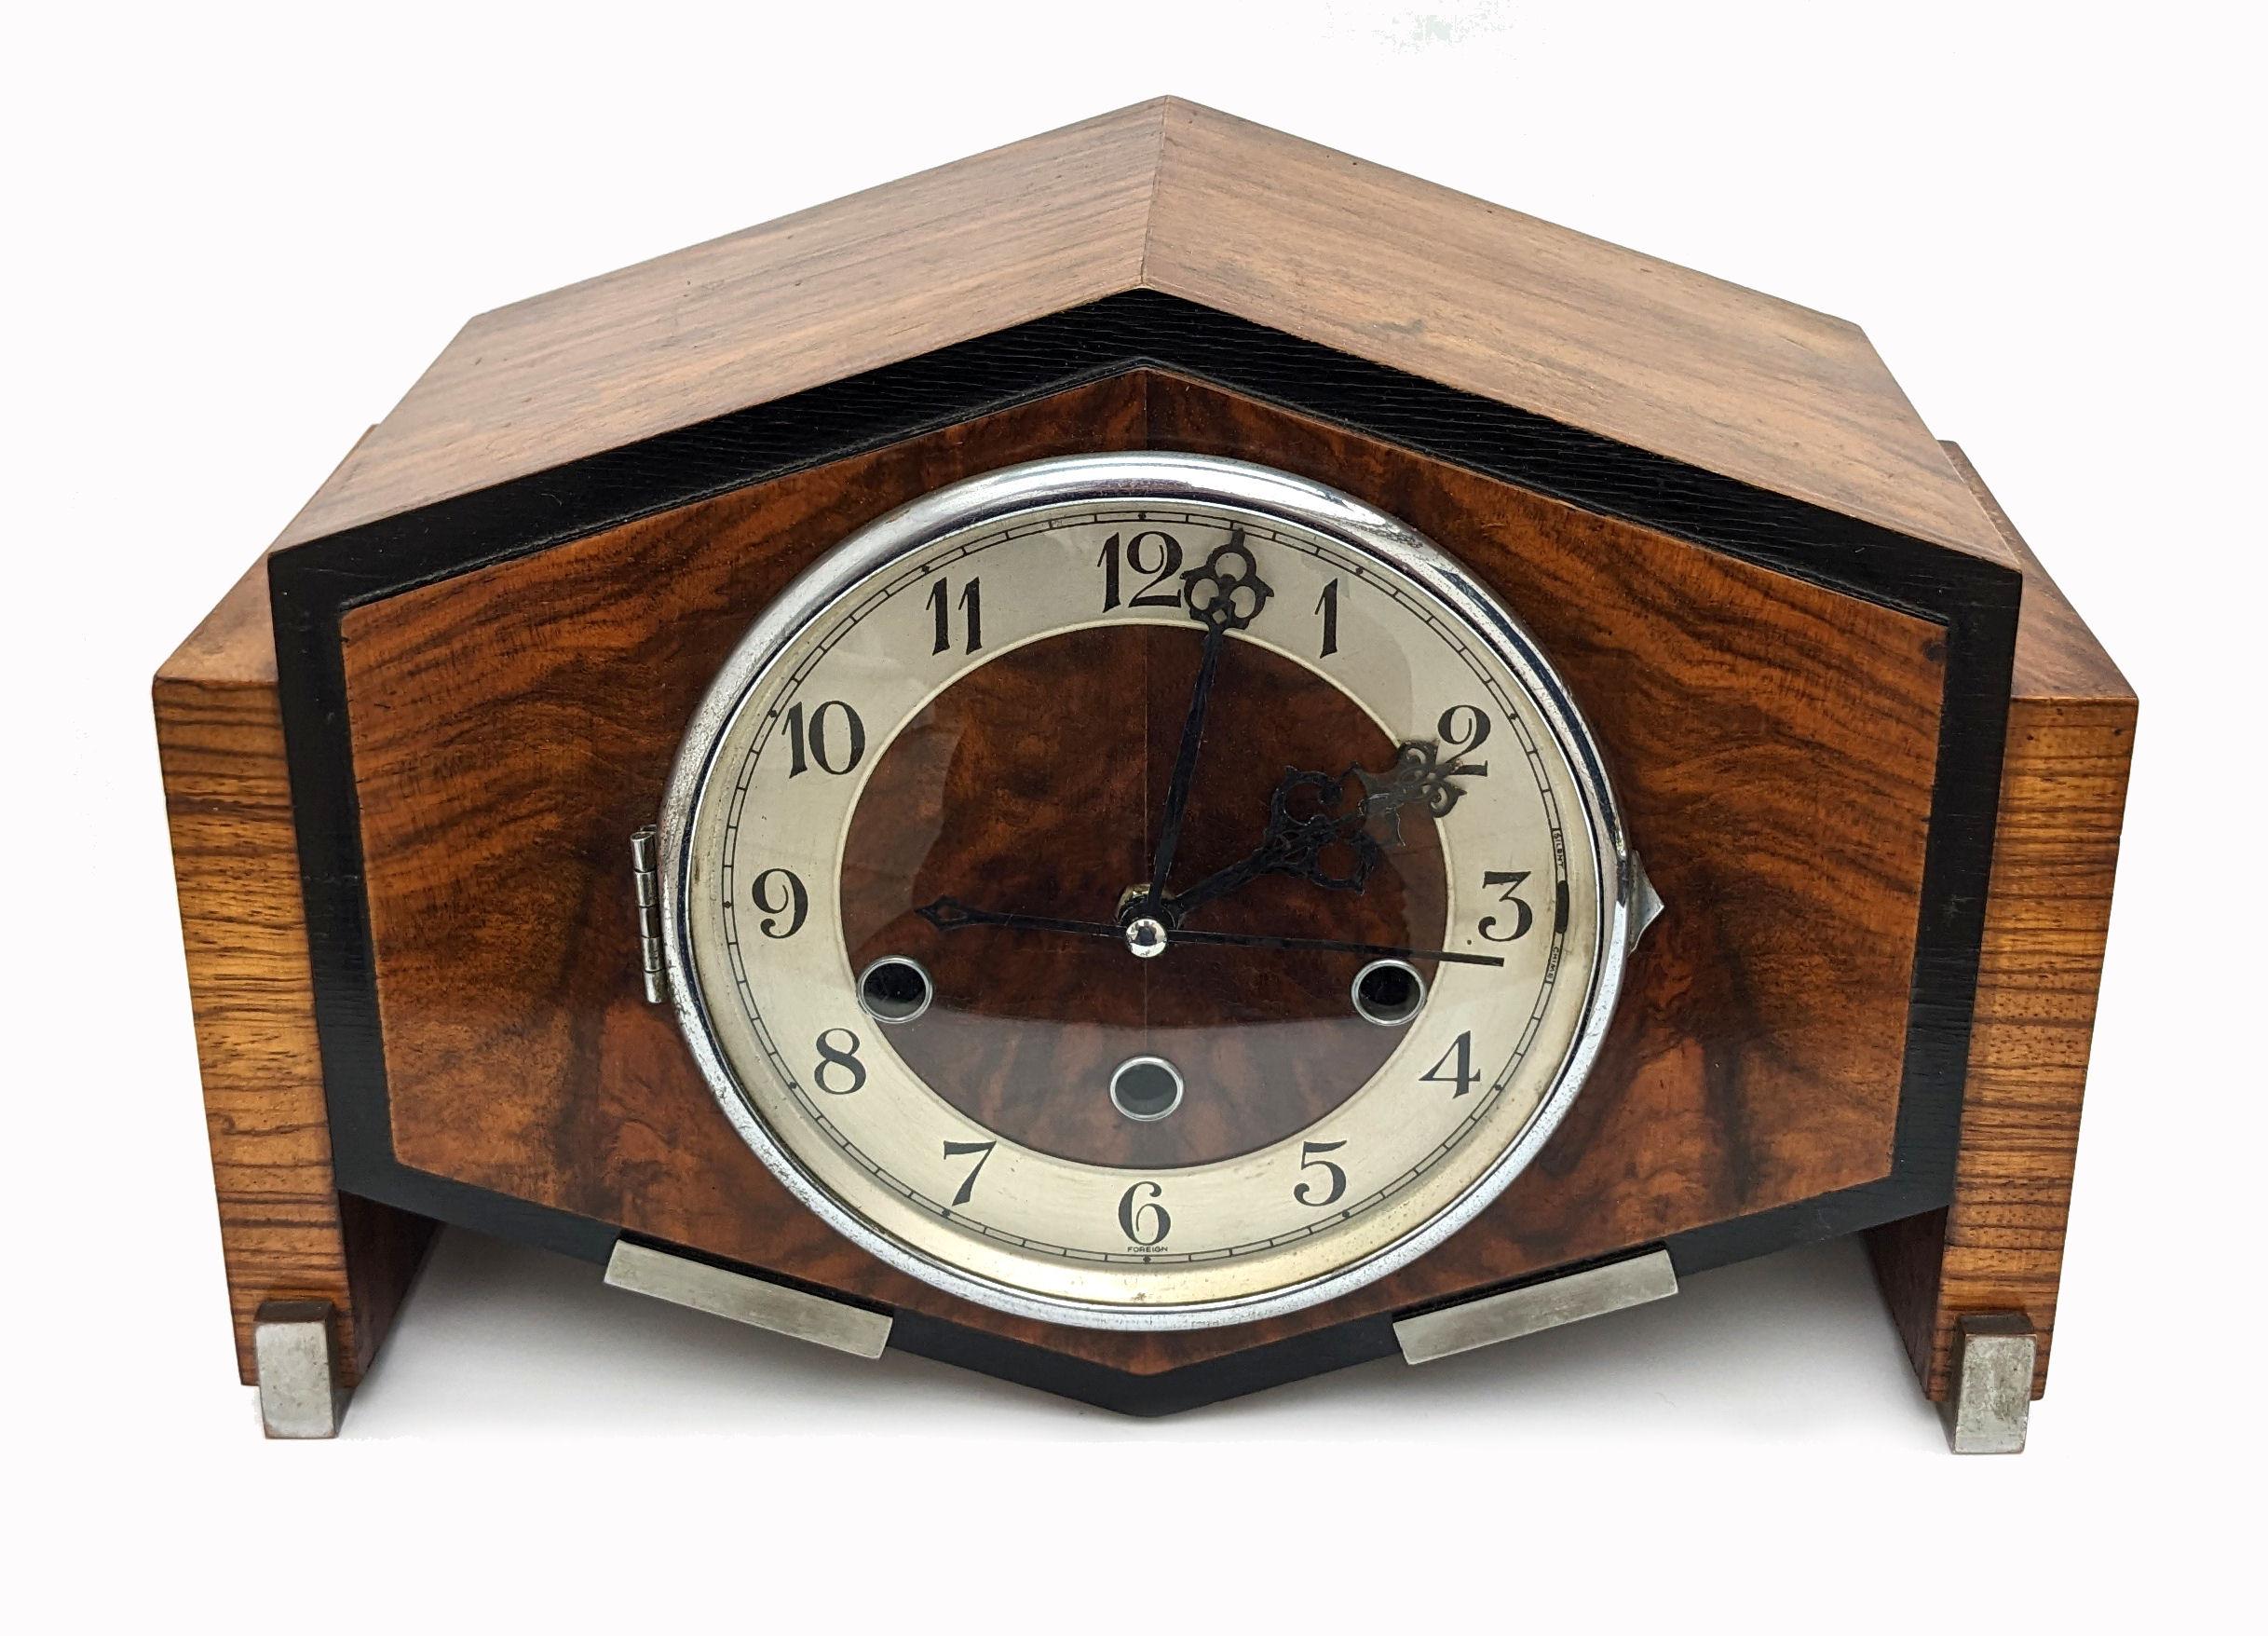 Für Ihre Betrachtung ist dieses sehr stilvolle 1930's Art Deco Mantel Uhr in England gemacht. Eine großartige kantige Form und aus Nussbaum mit Chromakzenten macht diese Uhr wirklich perfekt. Das Uhrwerk, das mit einem Pendel aufgezogen wurde  wurde